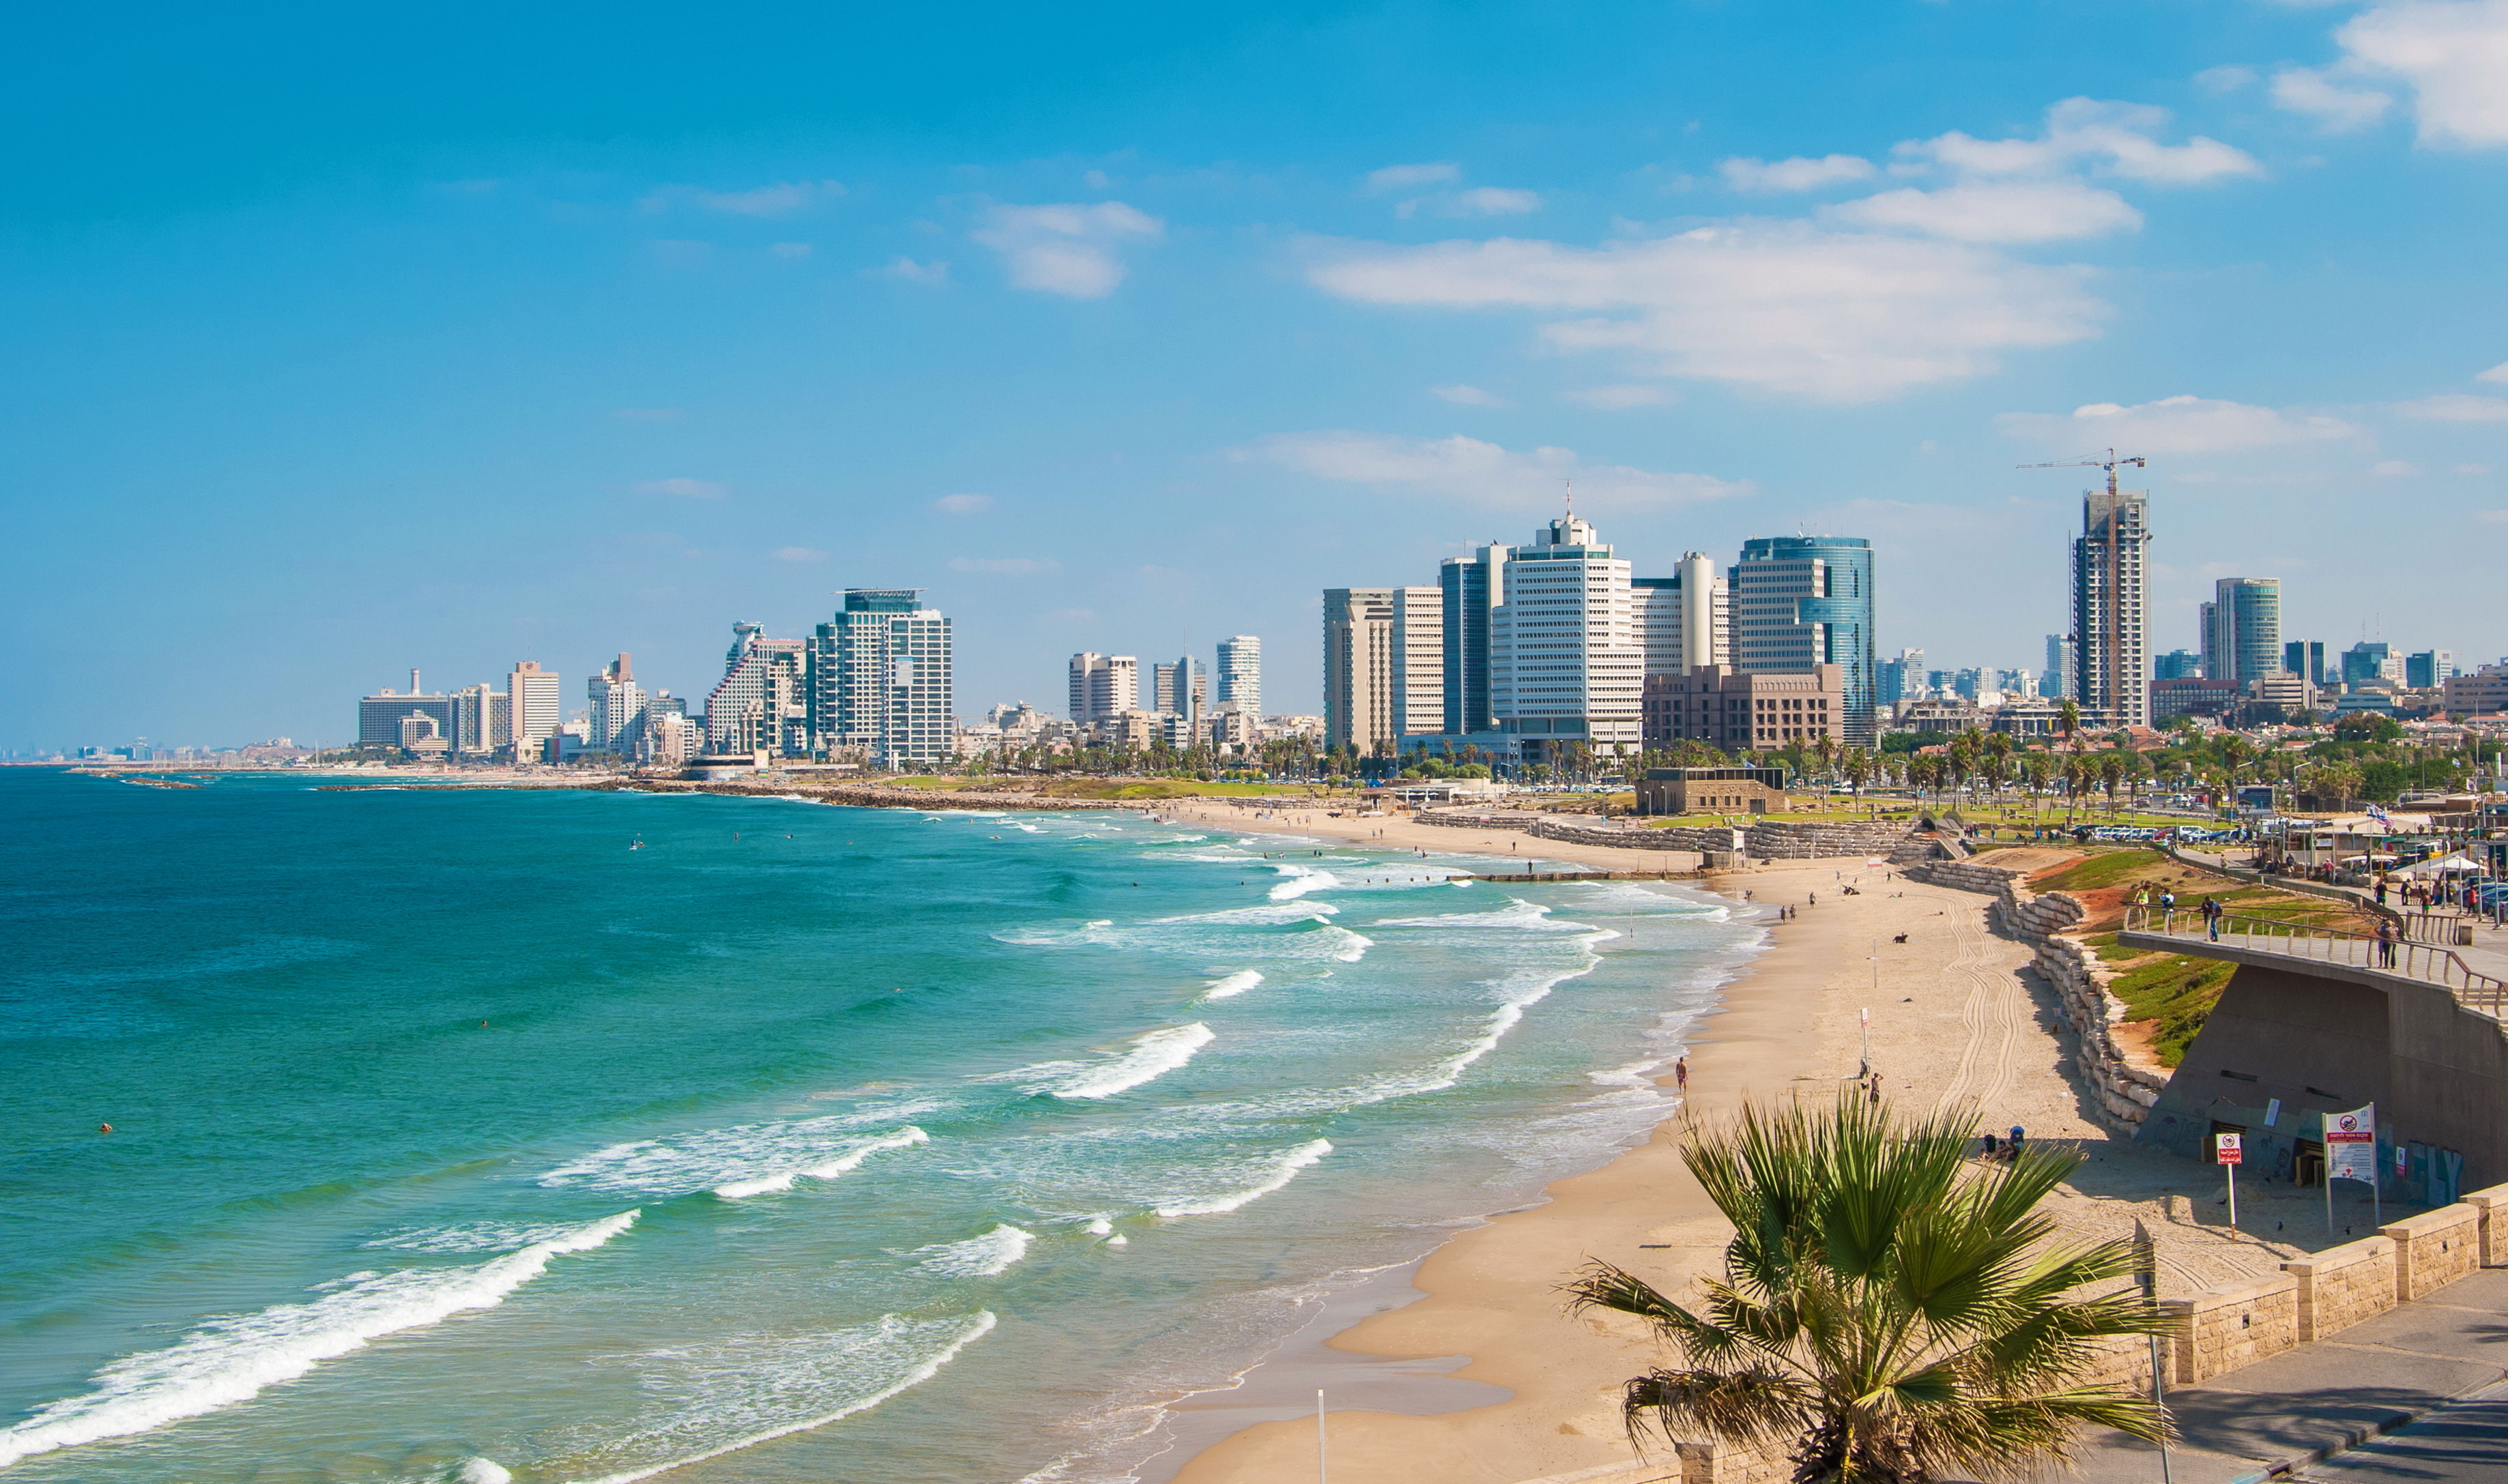 Flights to Tel Aviv in the $600s round-trip